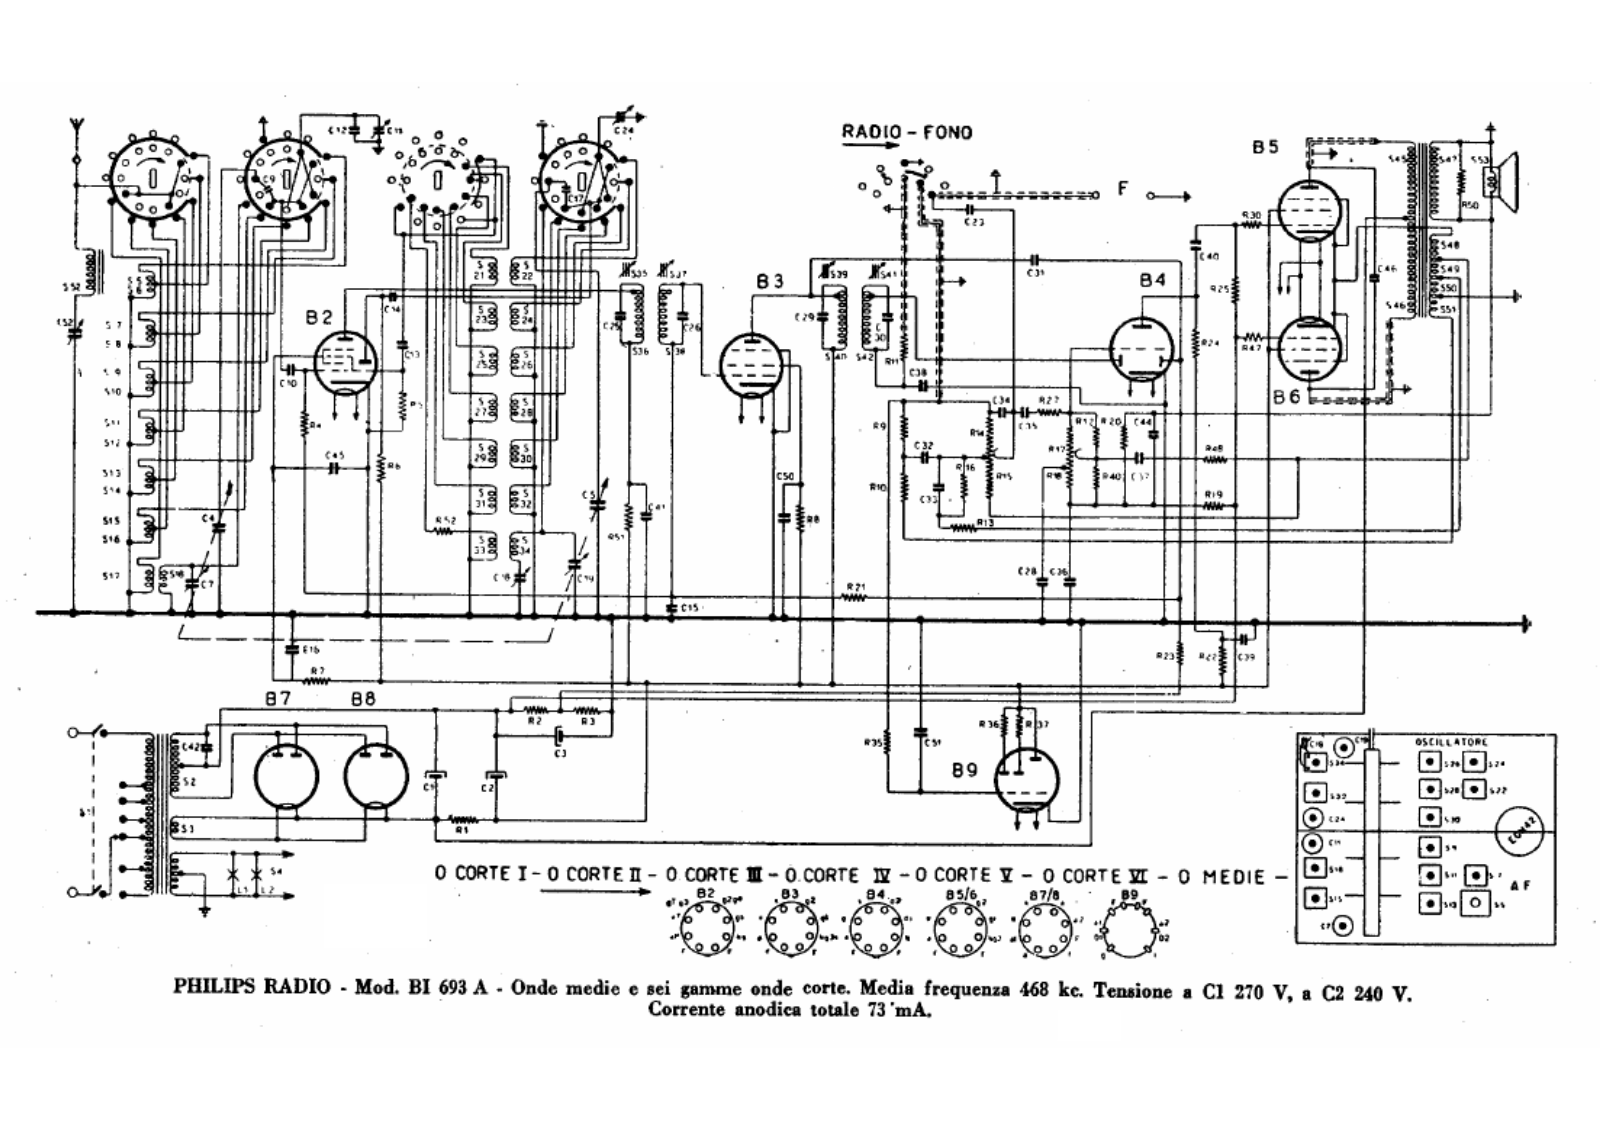 Philips bi693a schematic